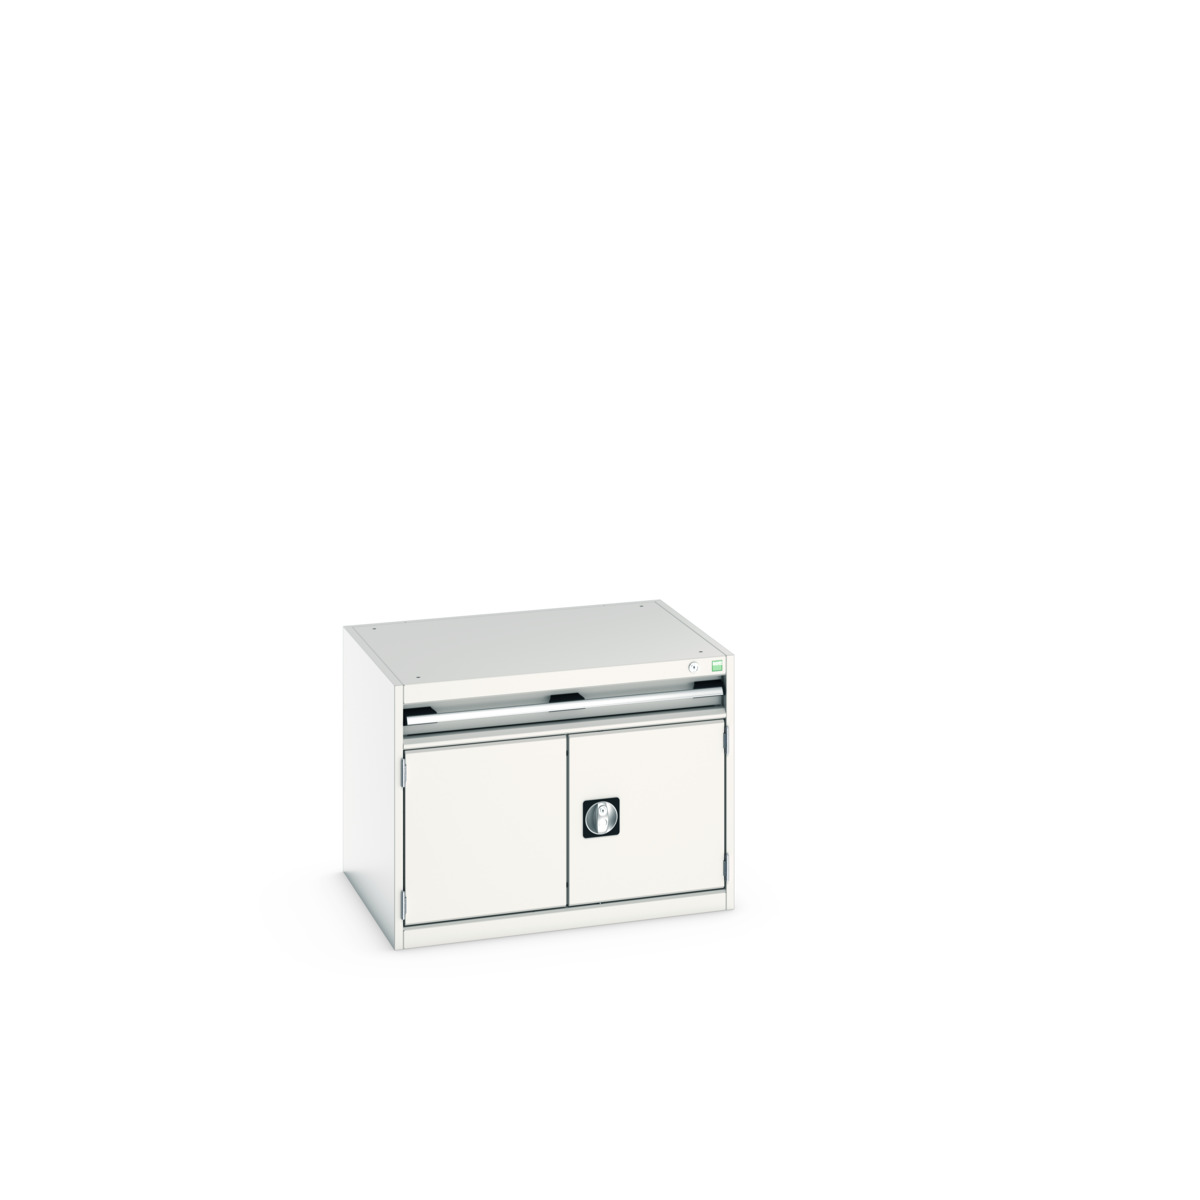 40020001.16V - cubio drawer-door cabinet